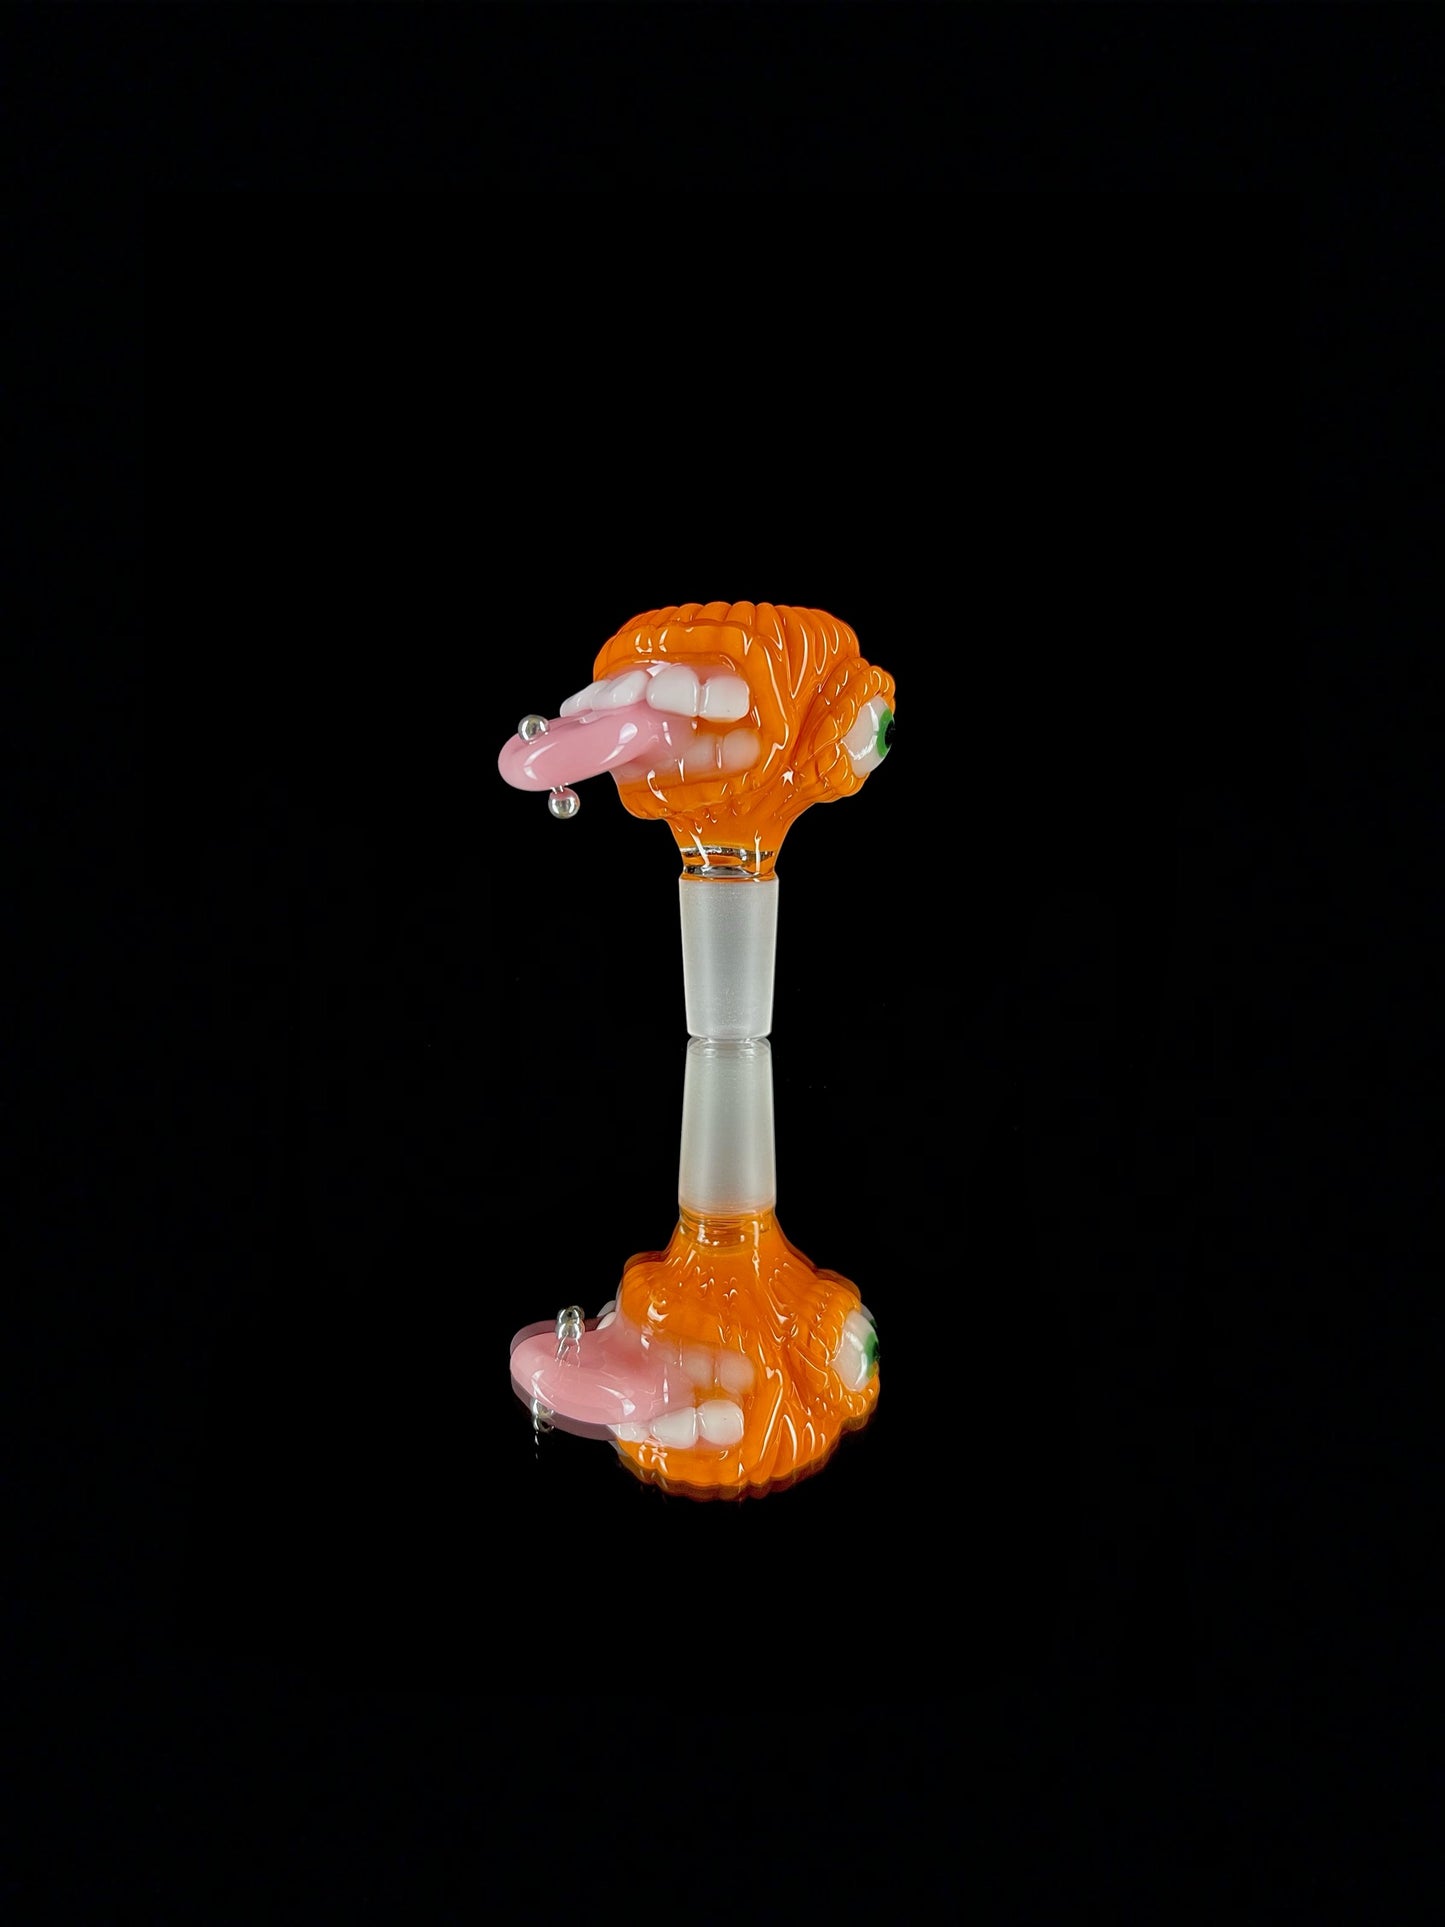 14mm pumpkin cyclops slide by Leviathan Glass